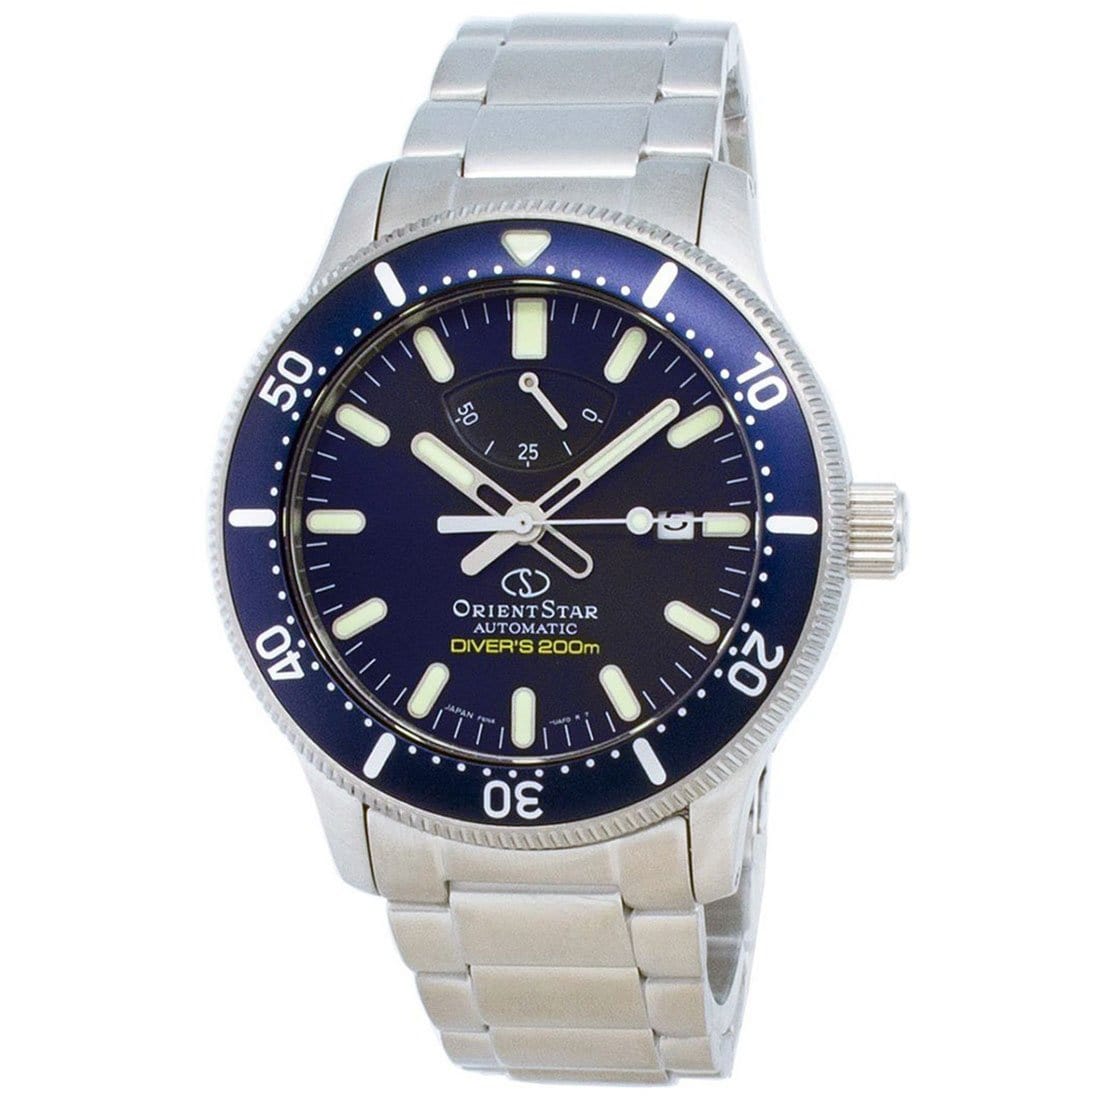 Orient Star Automatic 200M Analog Male Divers Watch RE-AU0302L00B RE-AU0302L